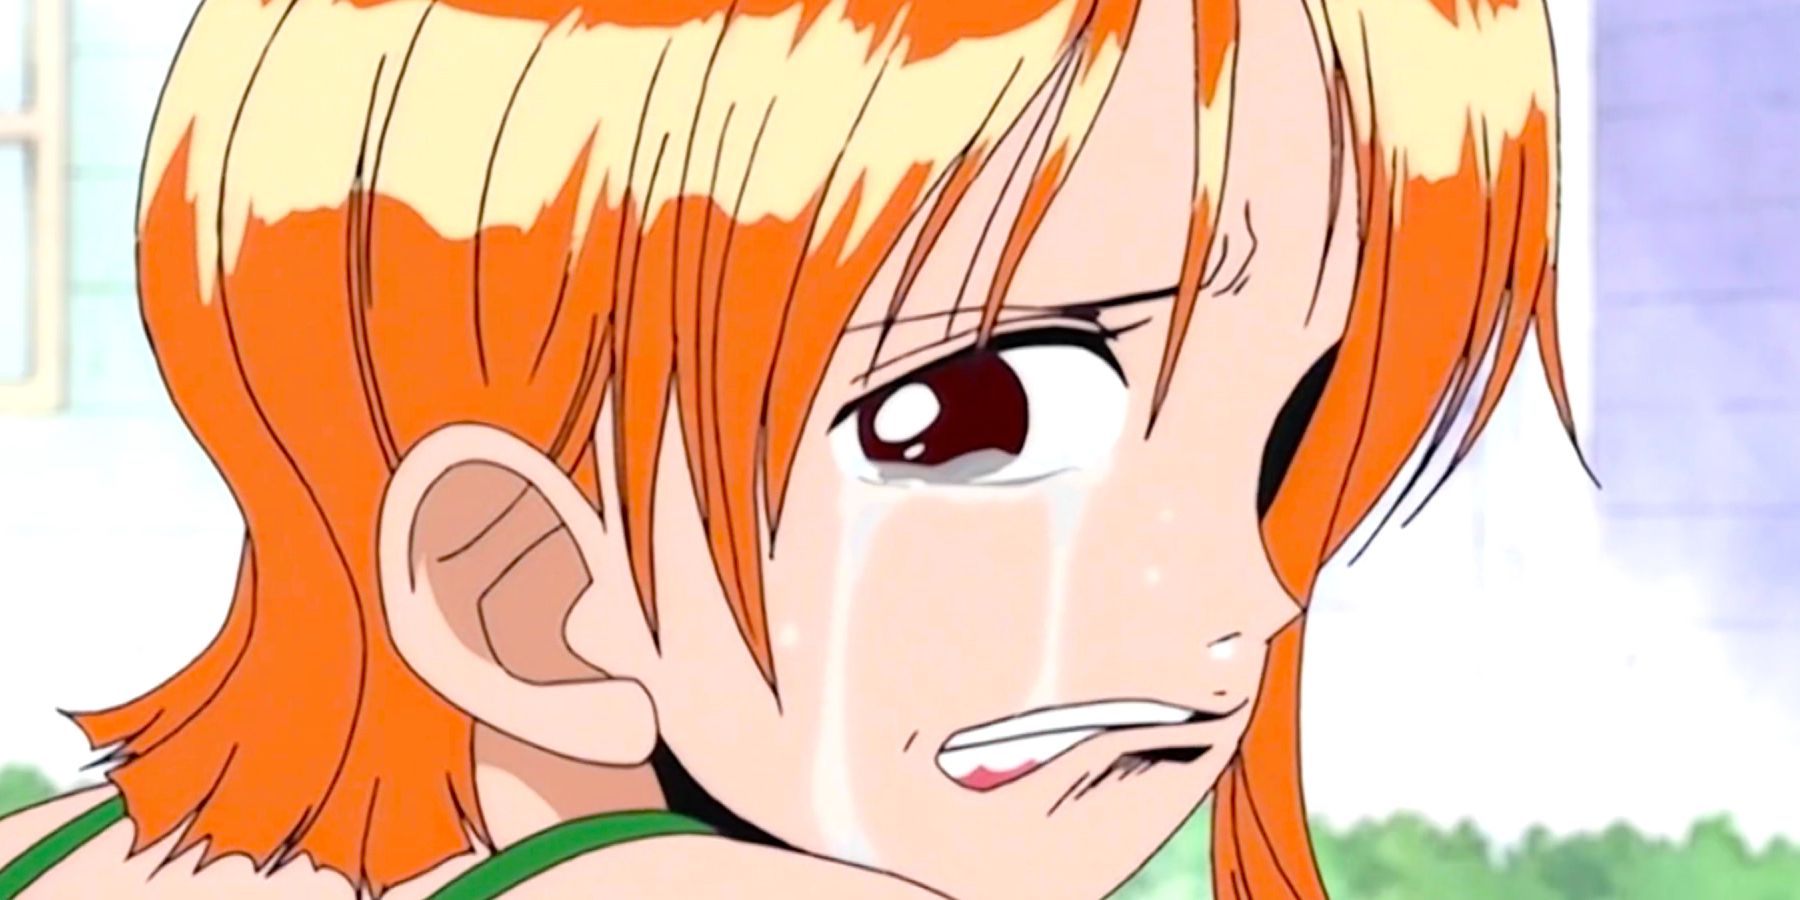 Los actores de anime y acción en vivo de One Piece, Luffy y Nami, realizan una escena icónica en un emotivo video